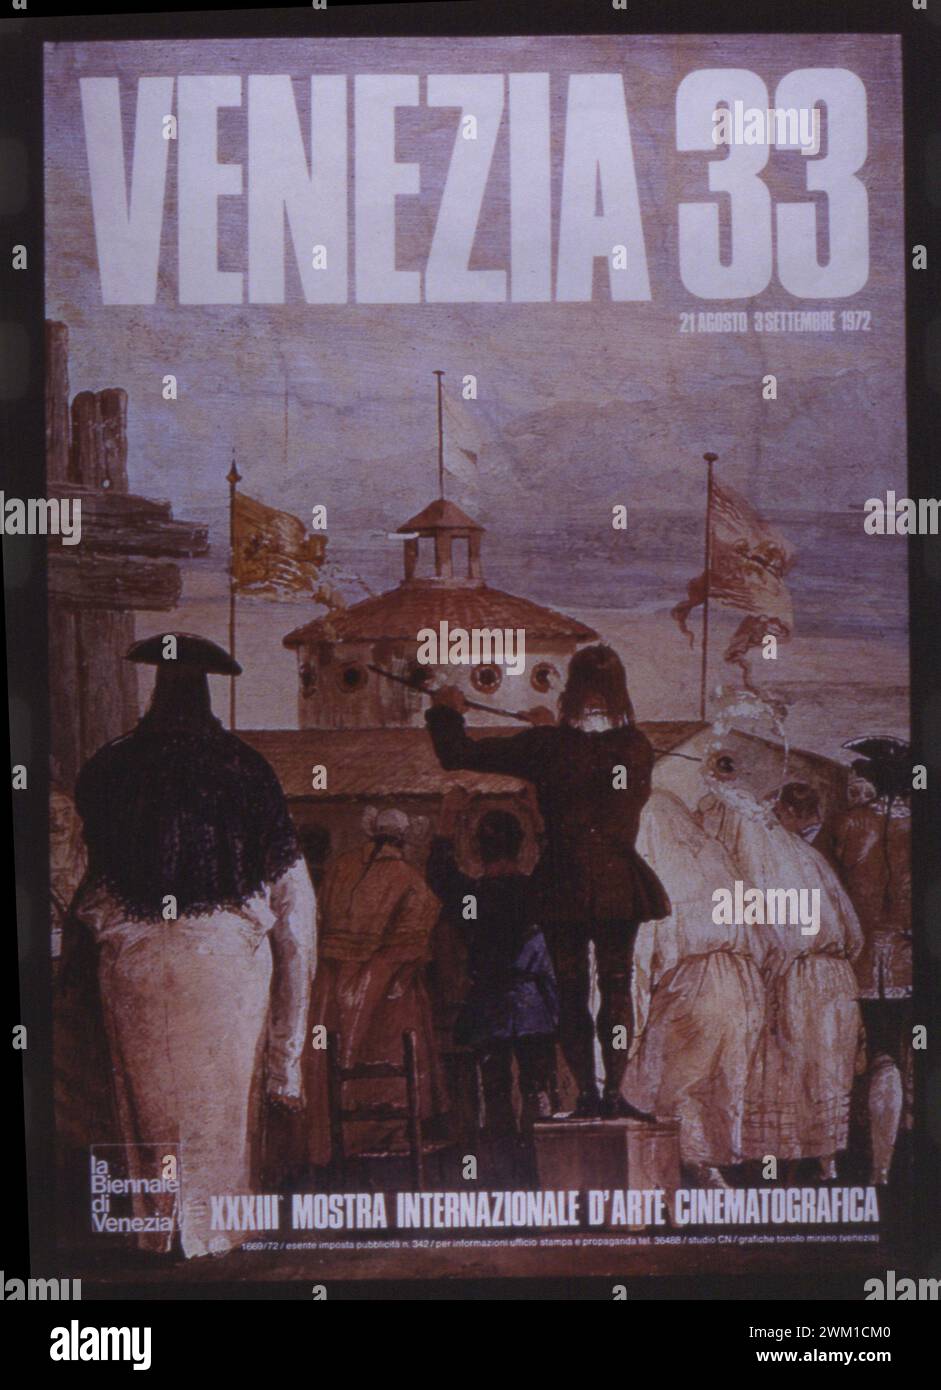 4067177 Venice Film Festival Posters / Manifesti della Mostra del Cinema di Venezia; (add.info.: Poster of Venice Film Festival 1972 / Manifesto della Mostra del Cinema di Venezia 1972 - Reproduced by Marcello Mencarini); © Marcello Mencarini. All rights reserved 2024. Stock Photo